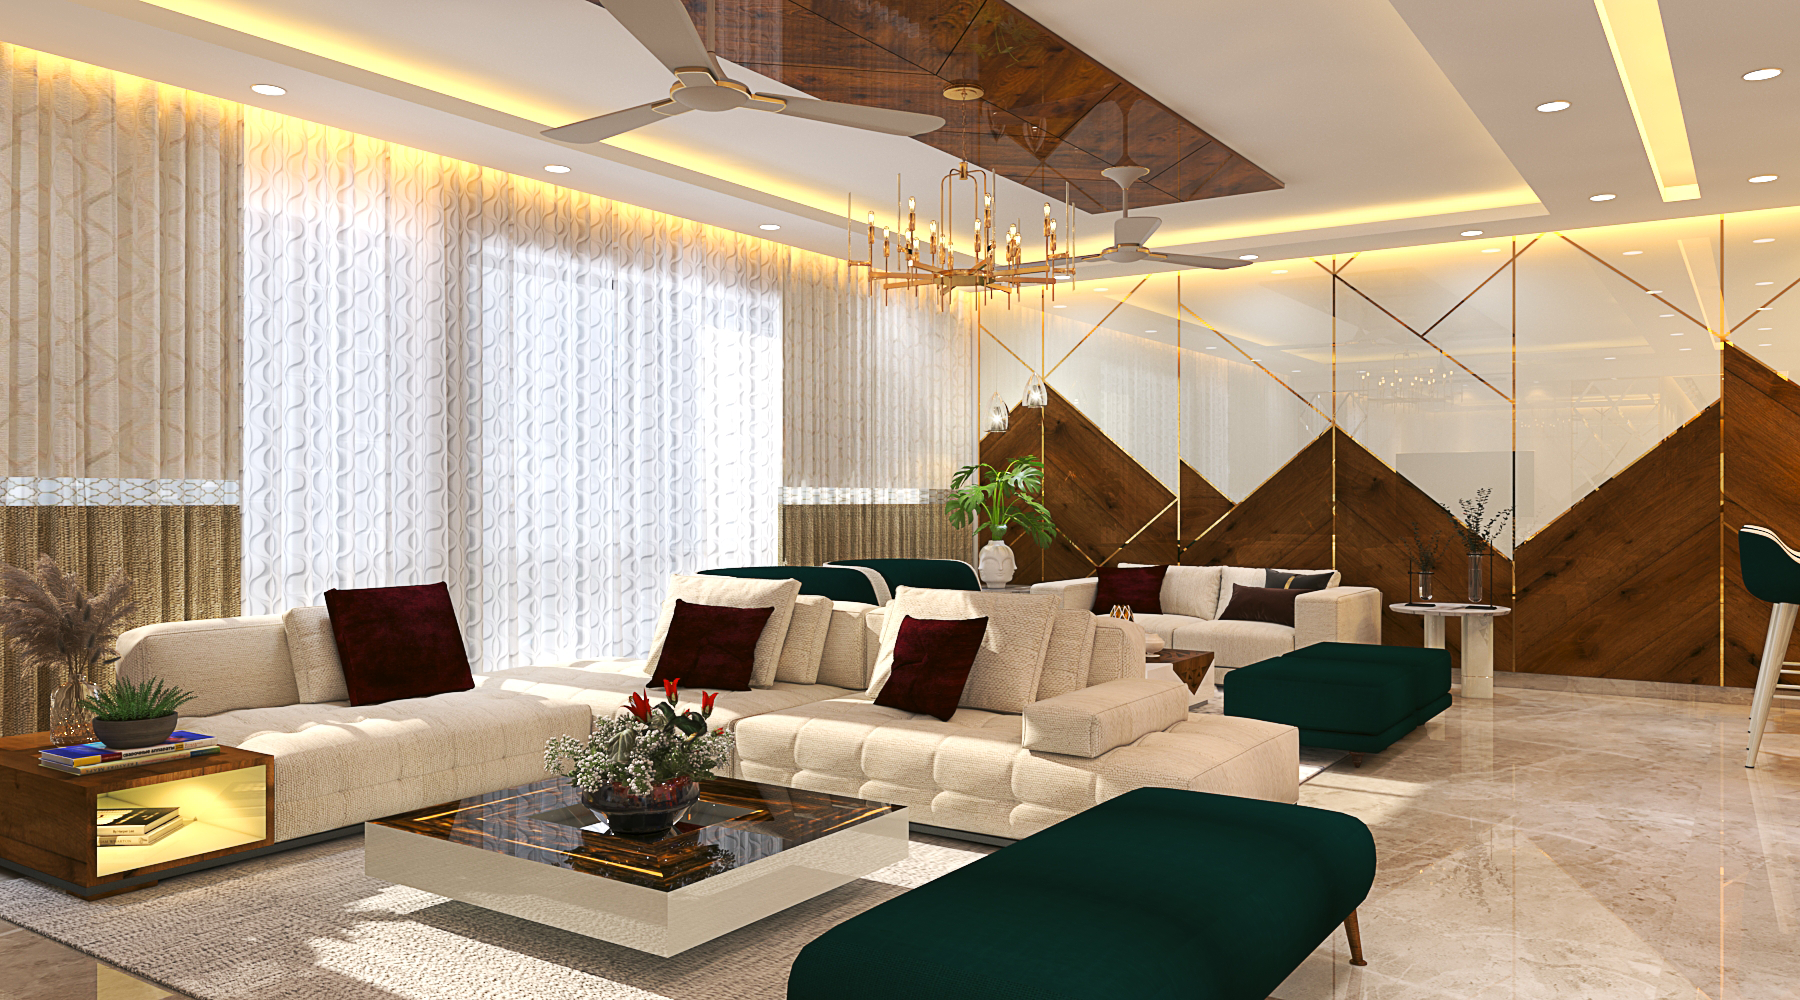 3D Drawing Room Interior Design: A Visual Guide-saigonsouth.com.vn